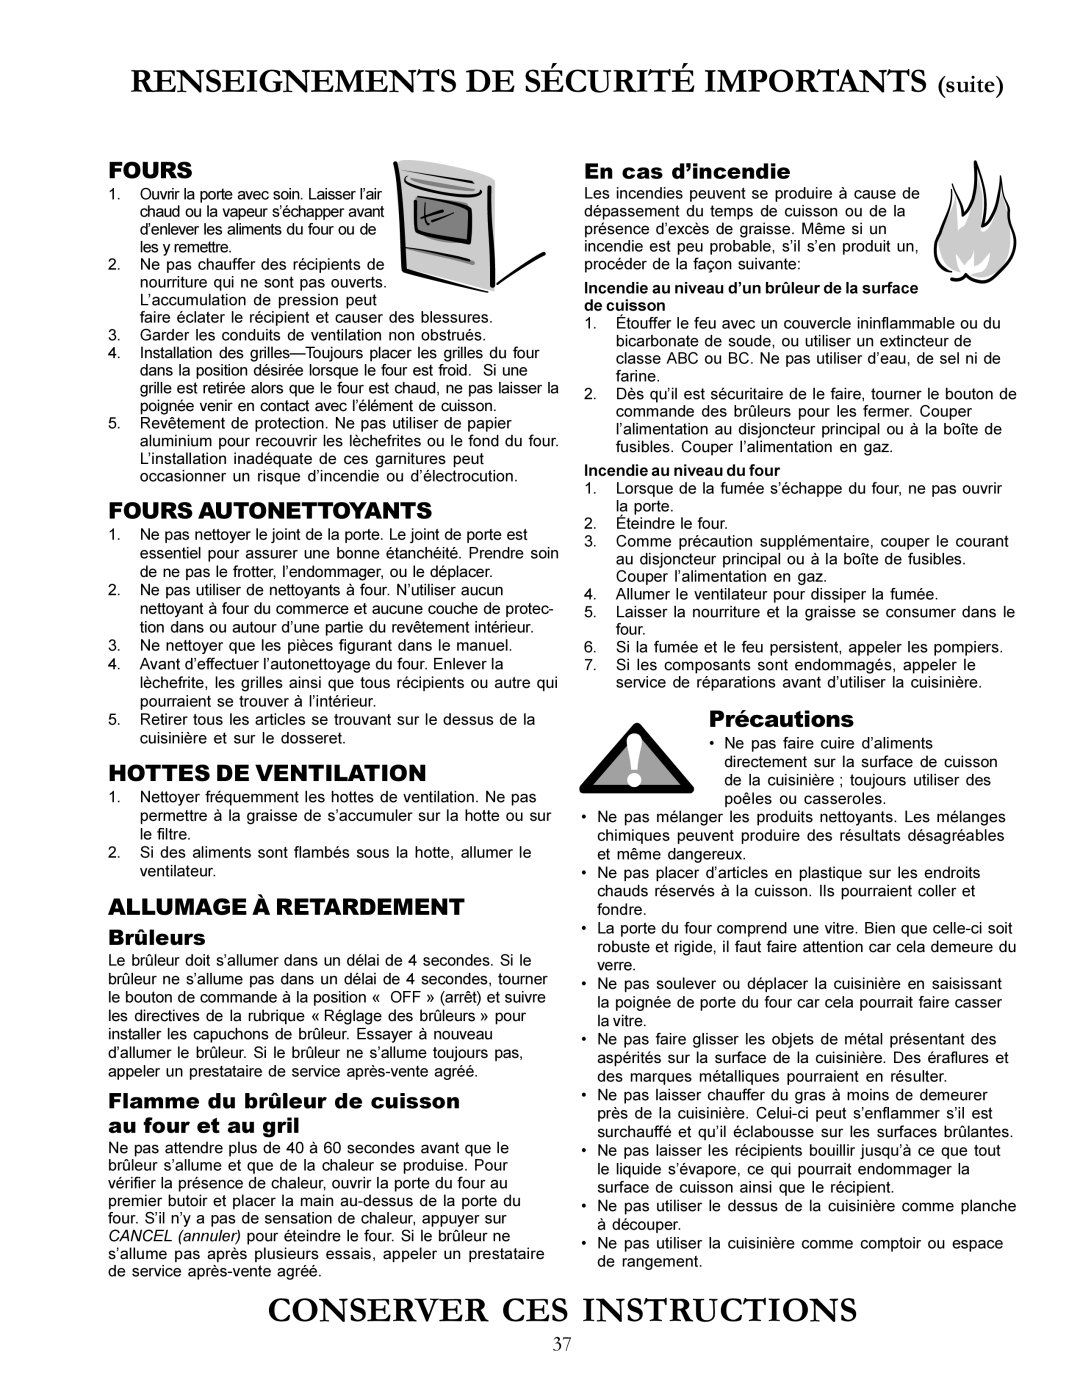 Amana ACF3355A Conserver Ces Instructions, RENSEIGNEMENTS DE SÉCURITÉ IMPORTANTS suite, Brûleurs, En cas d’incendie 